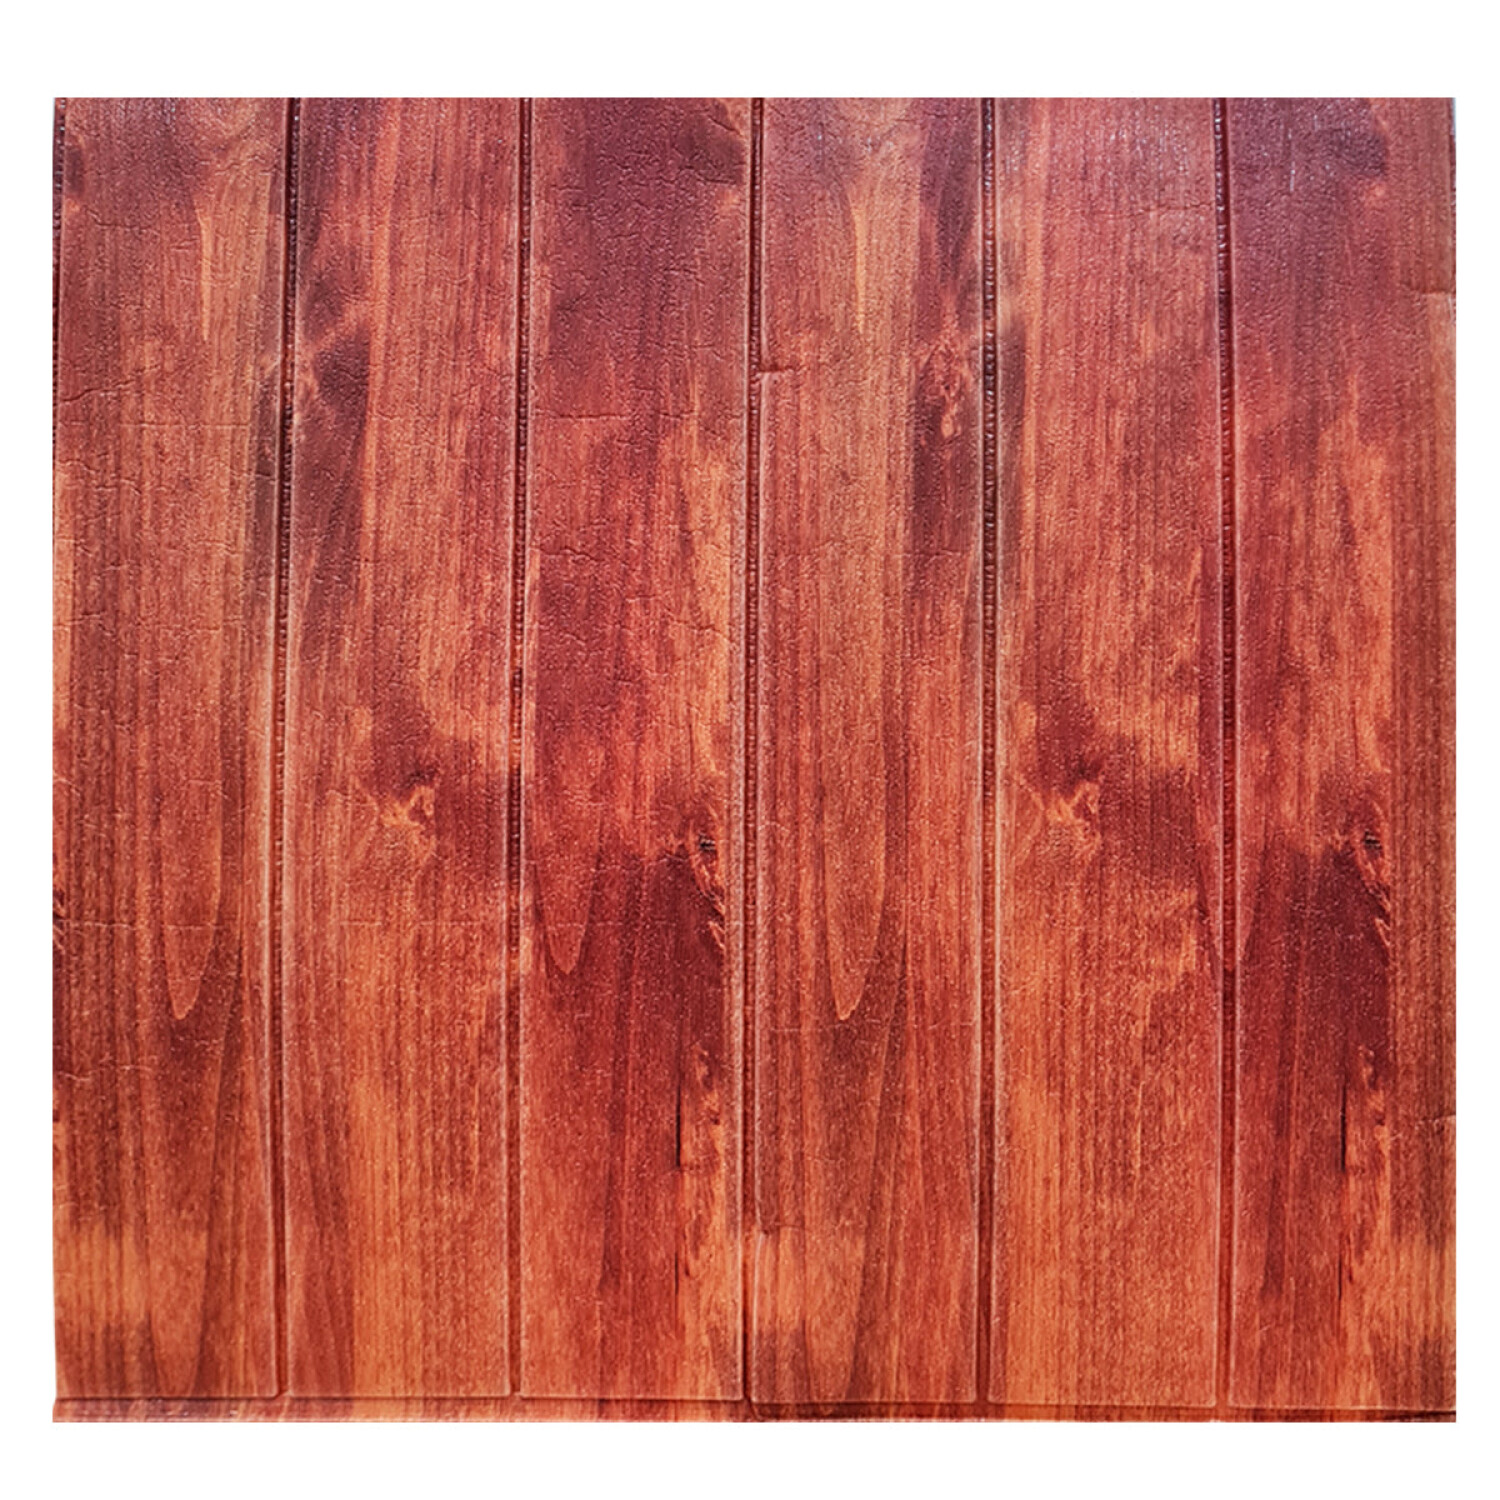 Tablero de revestimiento de pared de madera maciza de 93 pulgadas x 6  pulgadas x 0.8 pulgadas (juego de 3 piezas) - 3 piezas+1 pieza EndTrim